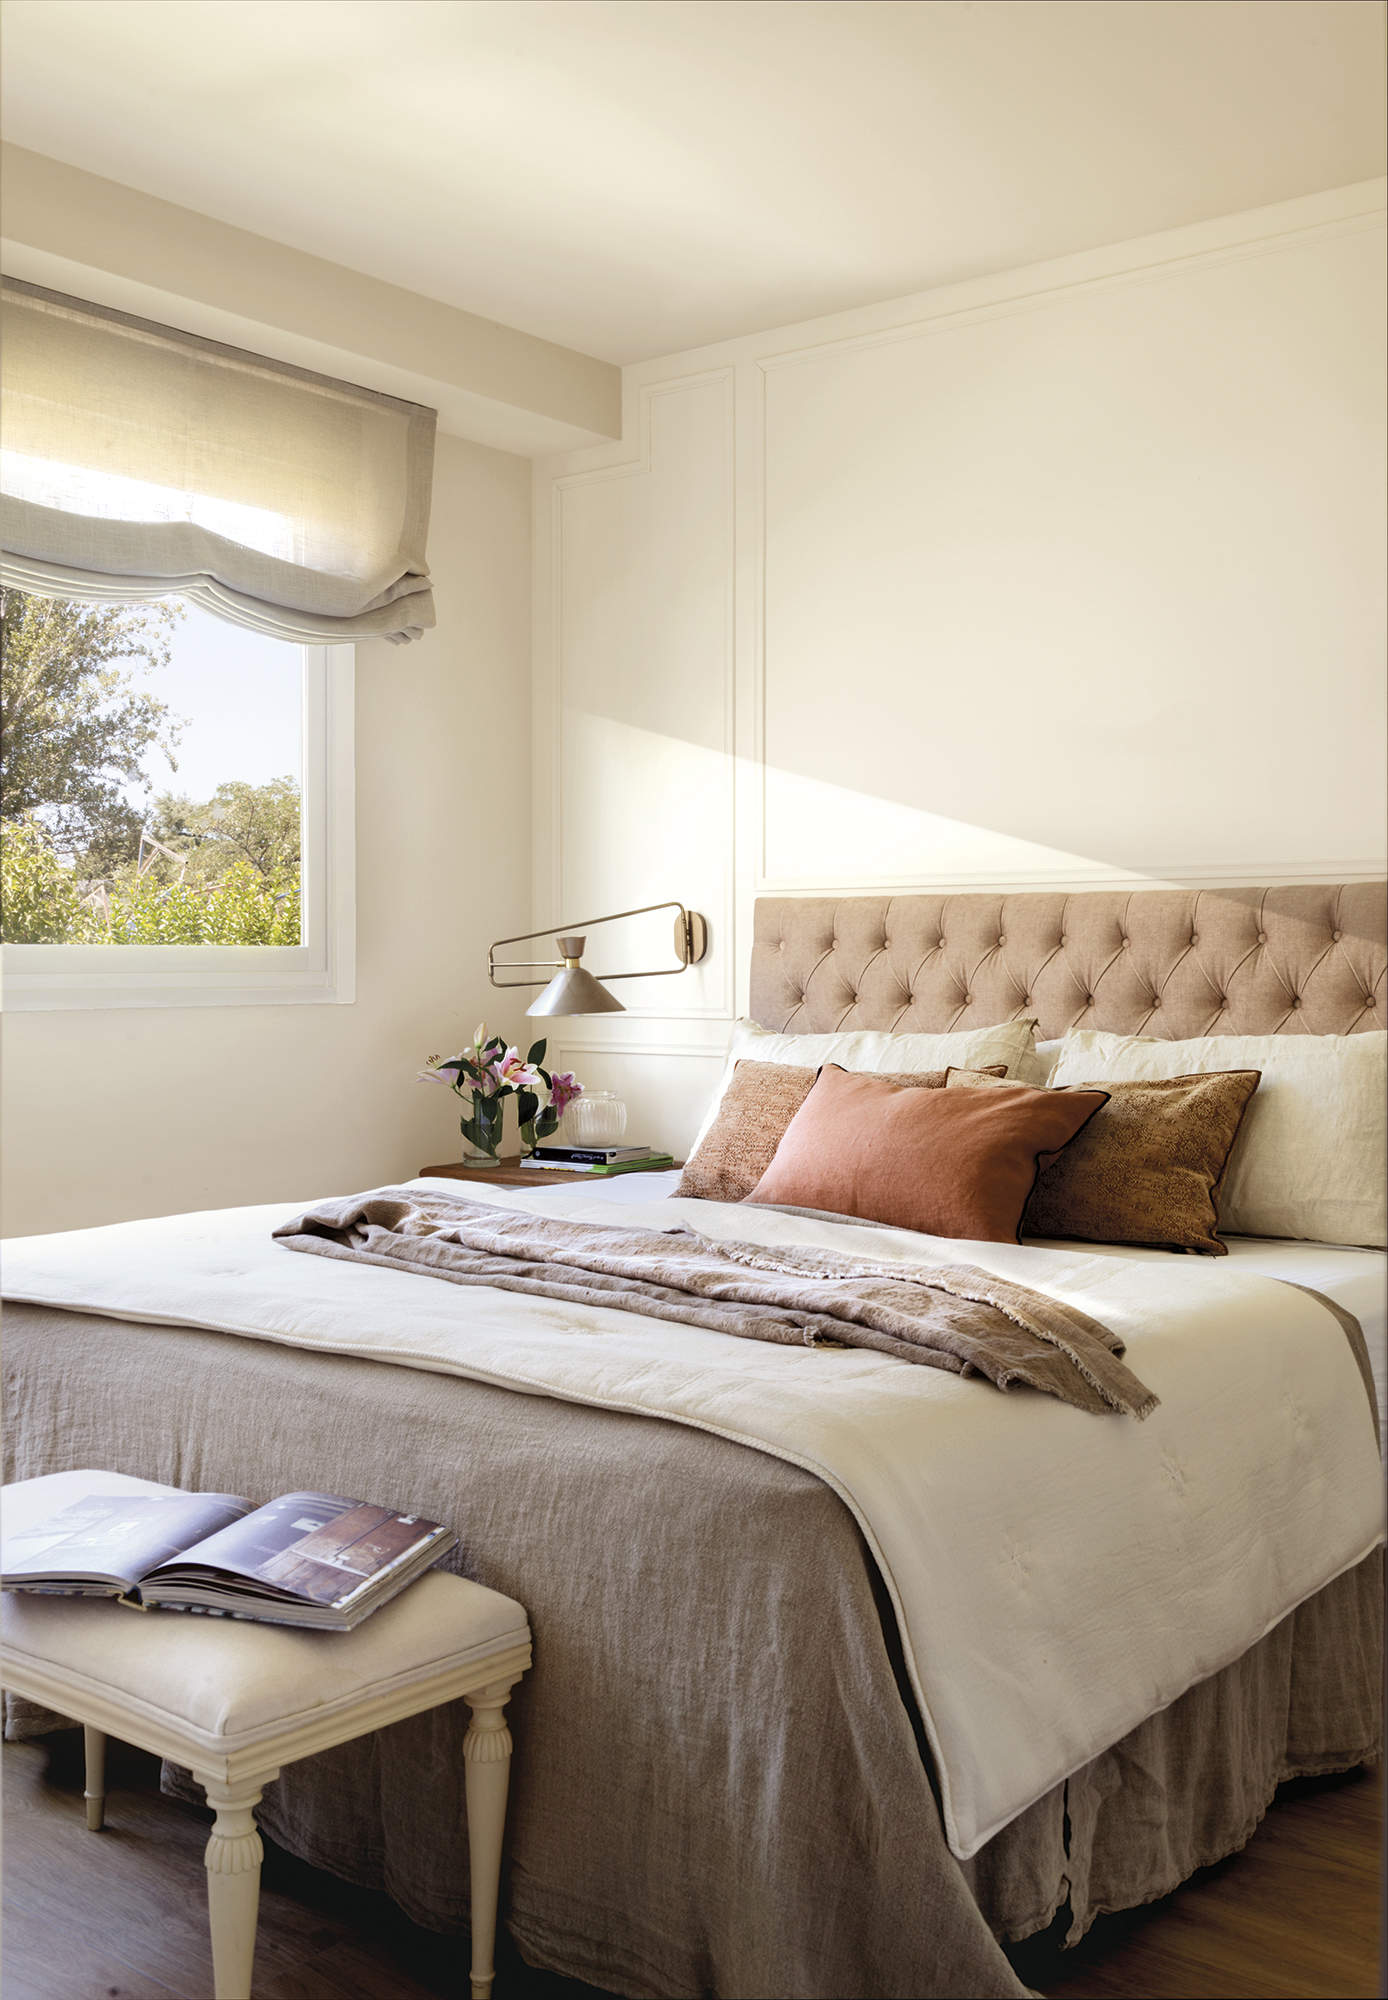 Dormitorio principal con cama con cabecero tapizado y aplique, estor gris, pared con molduras, banco estilo francés tapizado, ropa de cama gris, flores, suelo de madera